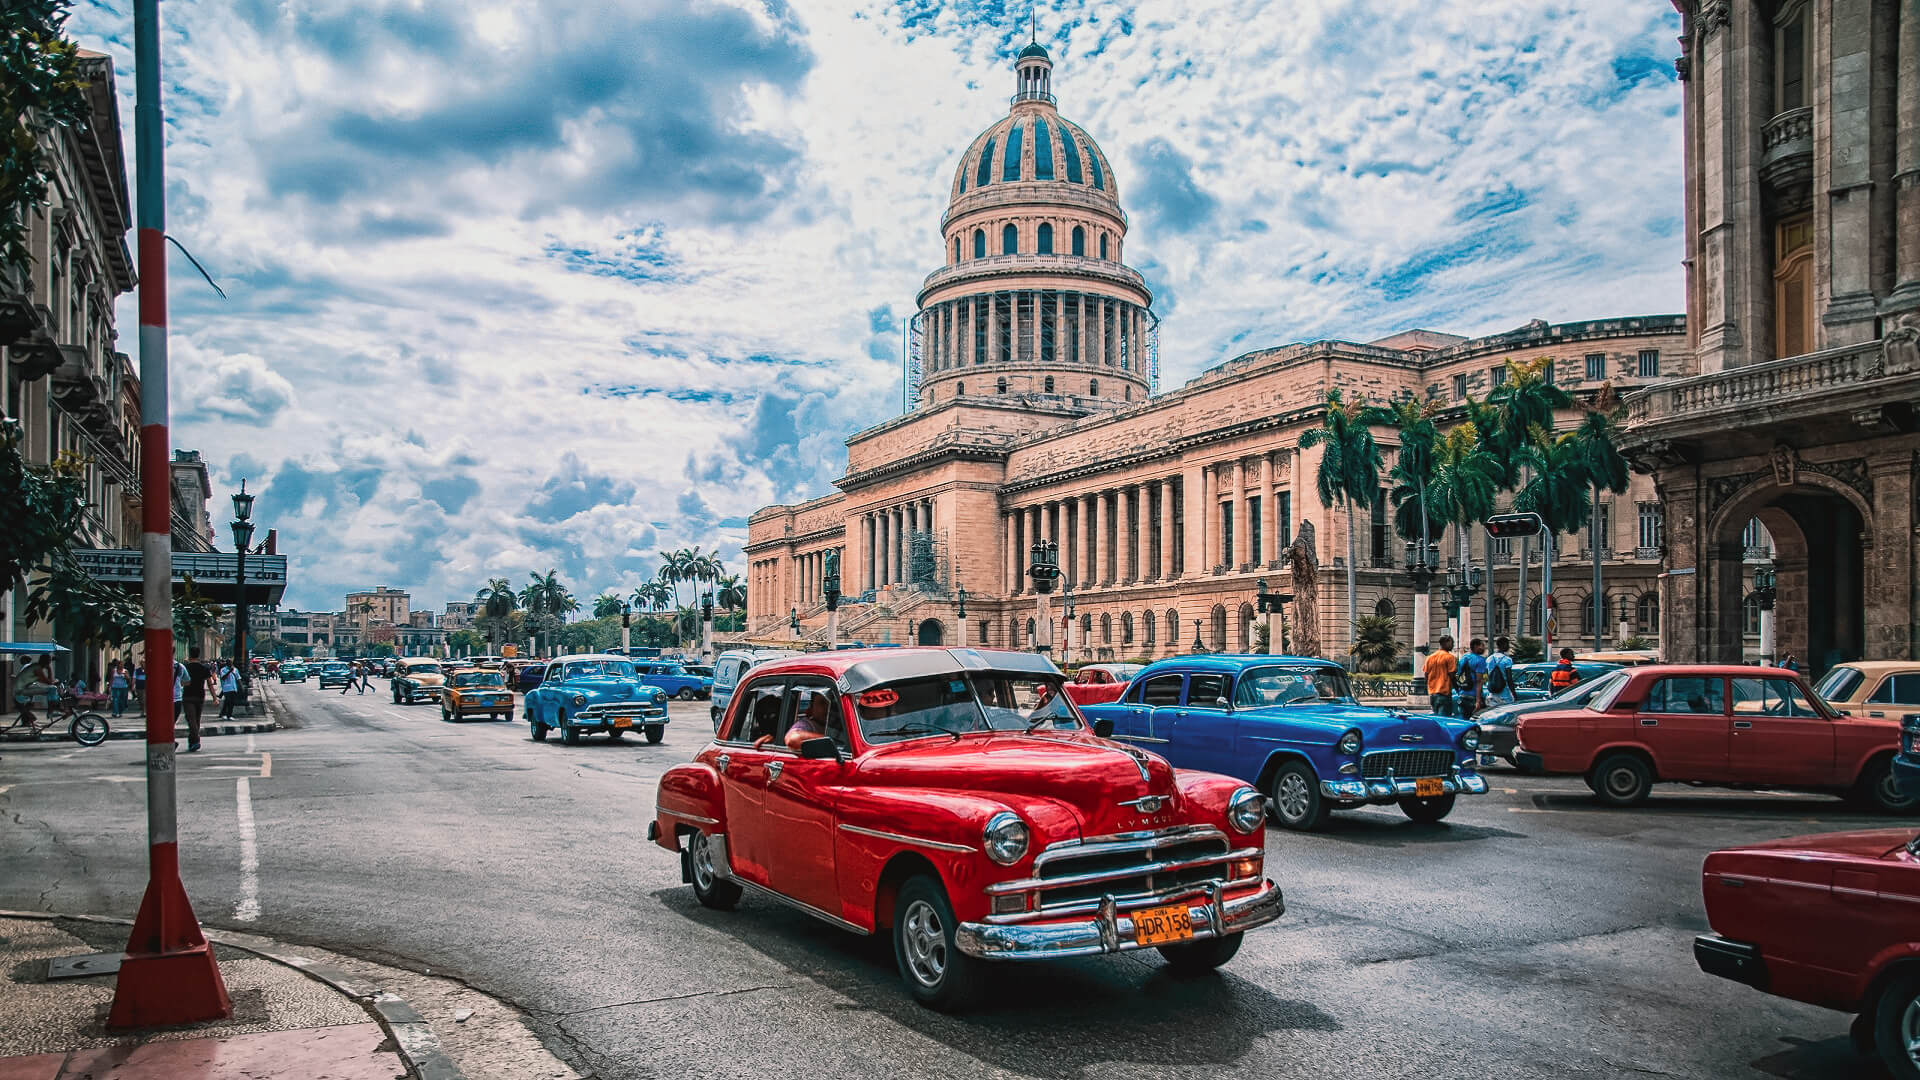 Cuba reisgids - Travel S helper